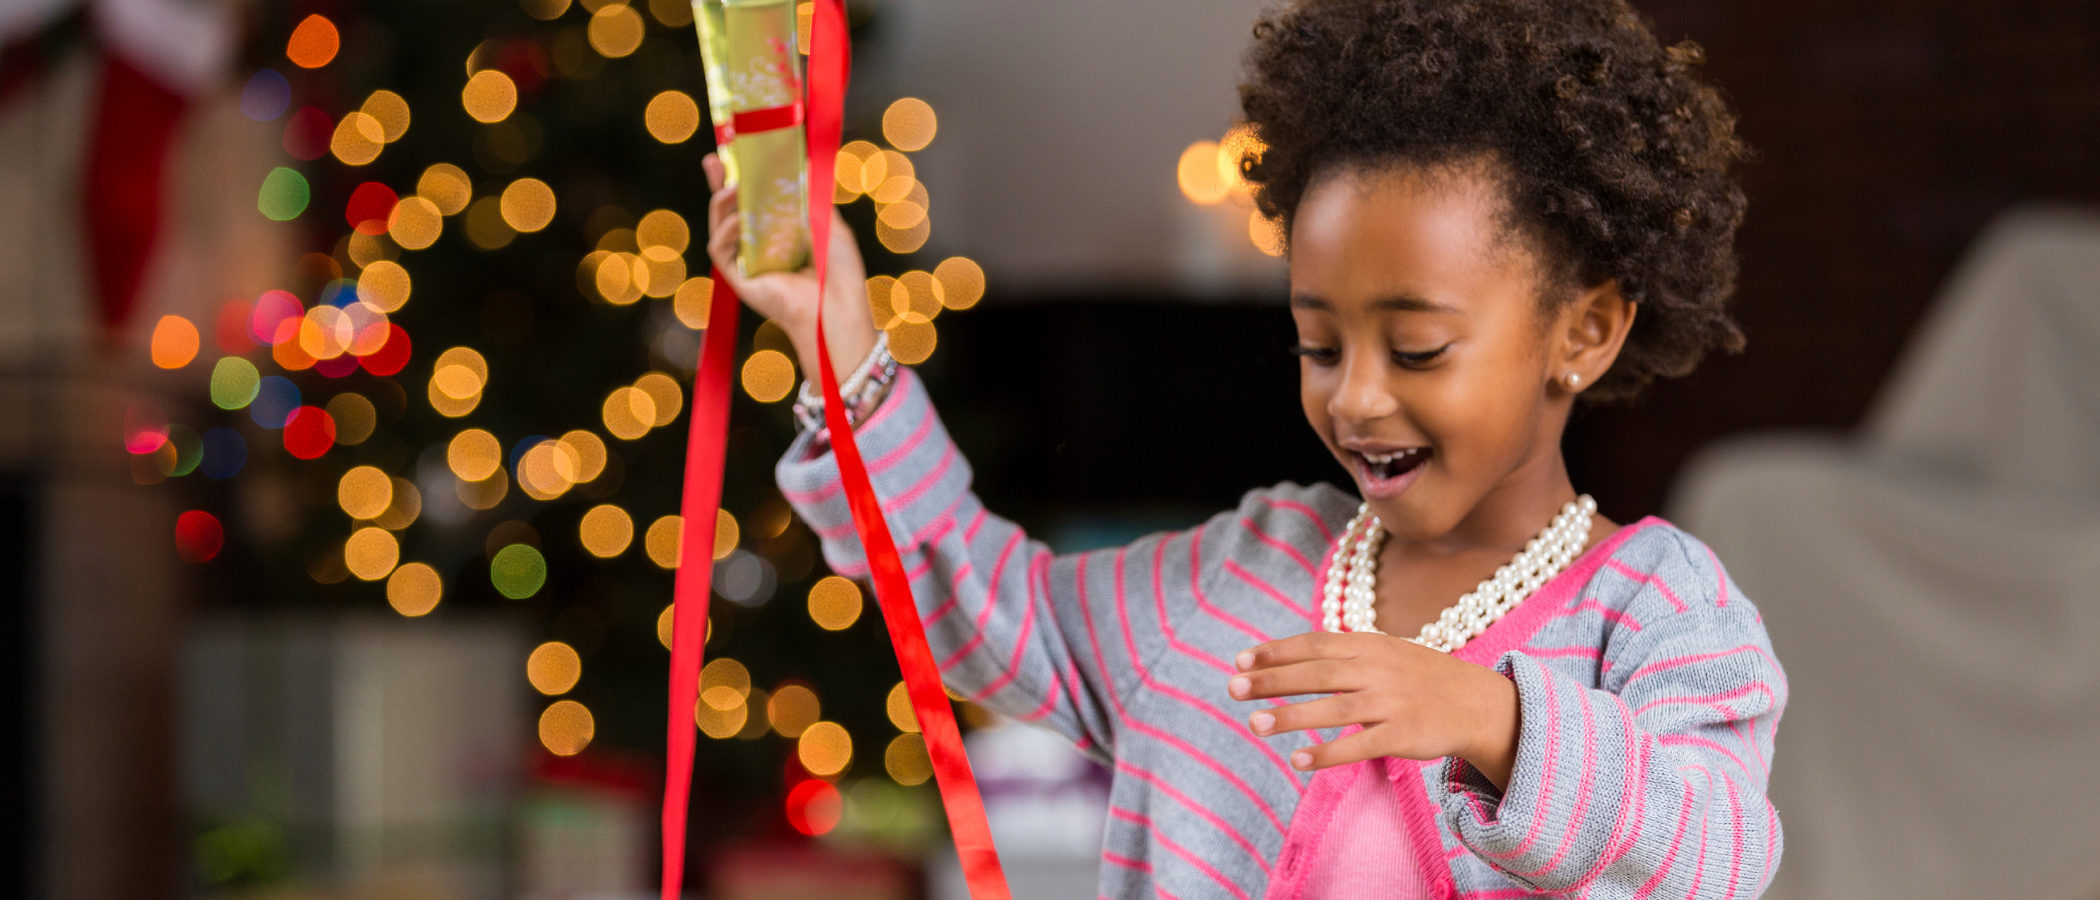 Regalos de Navidad para niños, ¿mejor juguetes educativos o clásicos?